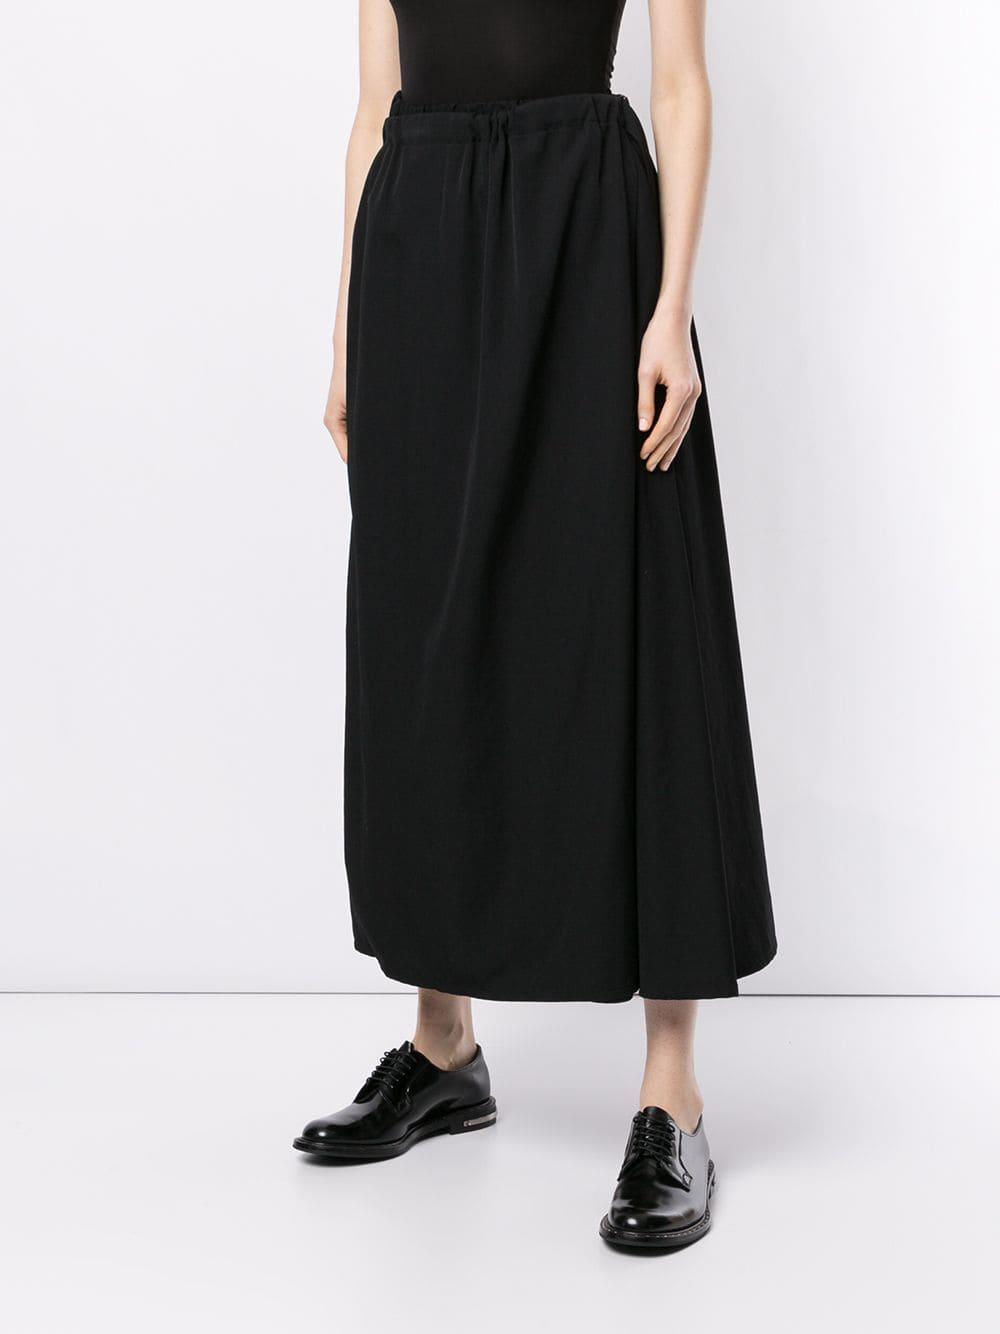 Yohji Yamamoto High-waisted Skirt in Black - Lyst